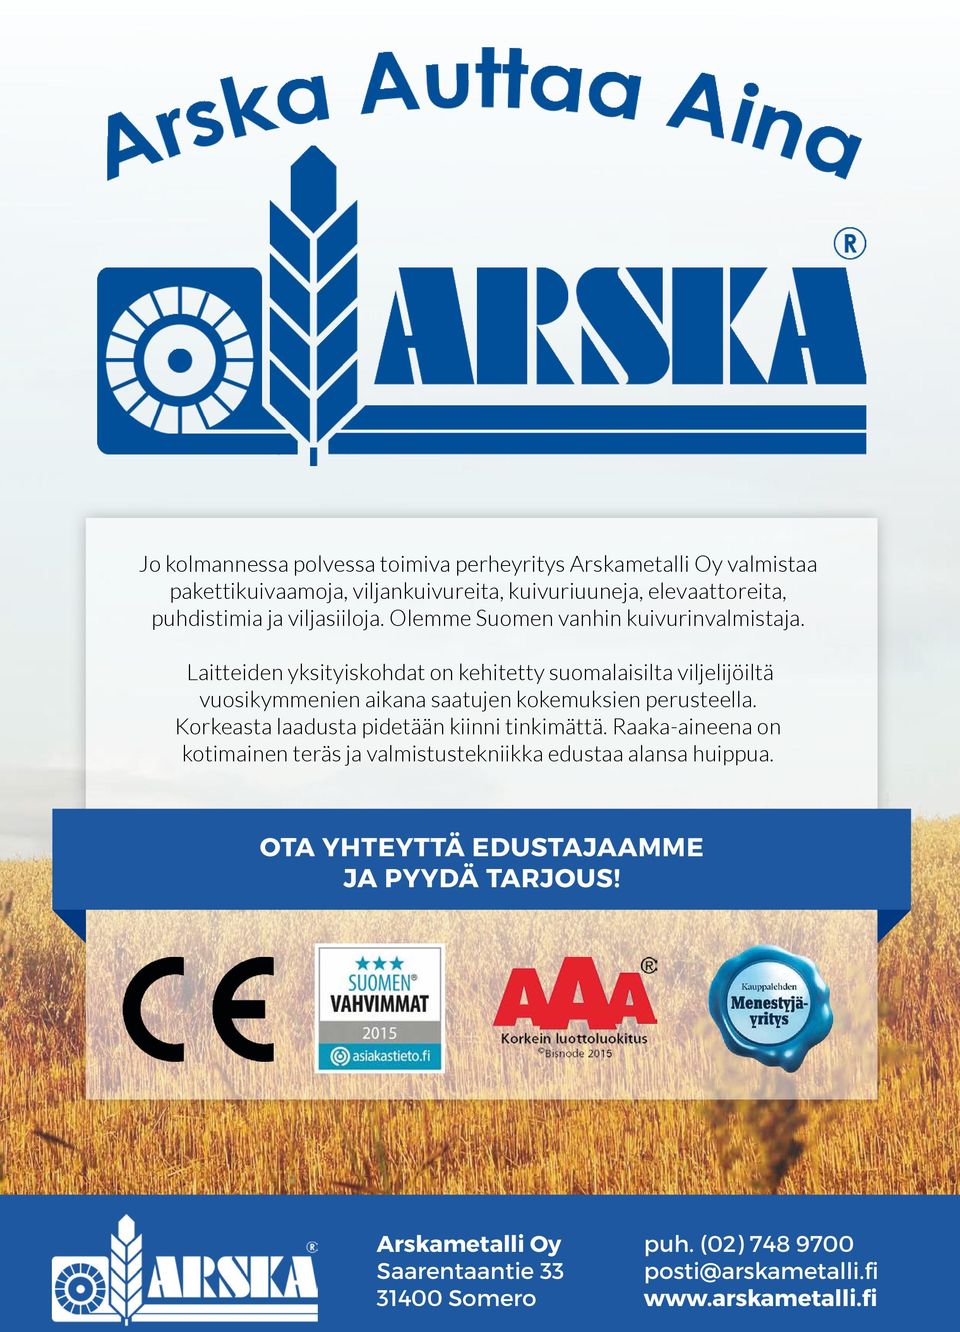 Laitteiden yksityiskohdat on kehitetty suomalaisilta viljelijöiltä vuosikymmenien aikana saatujen kokemuksien perusteella.